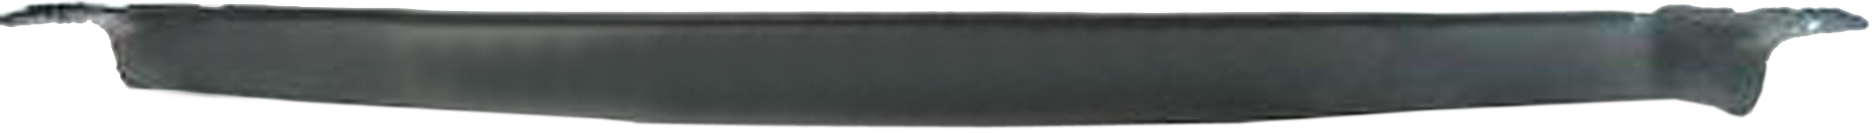 Aftermarket APRON/VALANCE/FILLER PLASTIC for GMC - R1500, R1500,87-87,Front bumper deflector